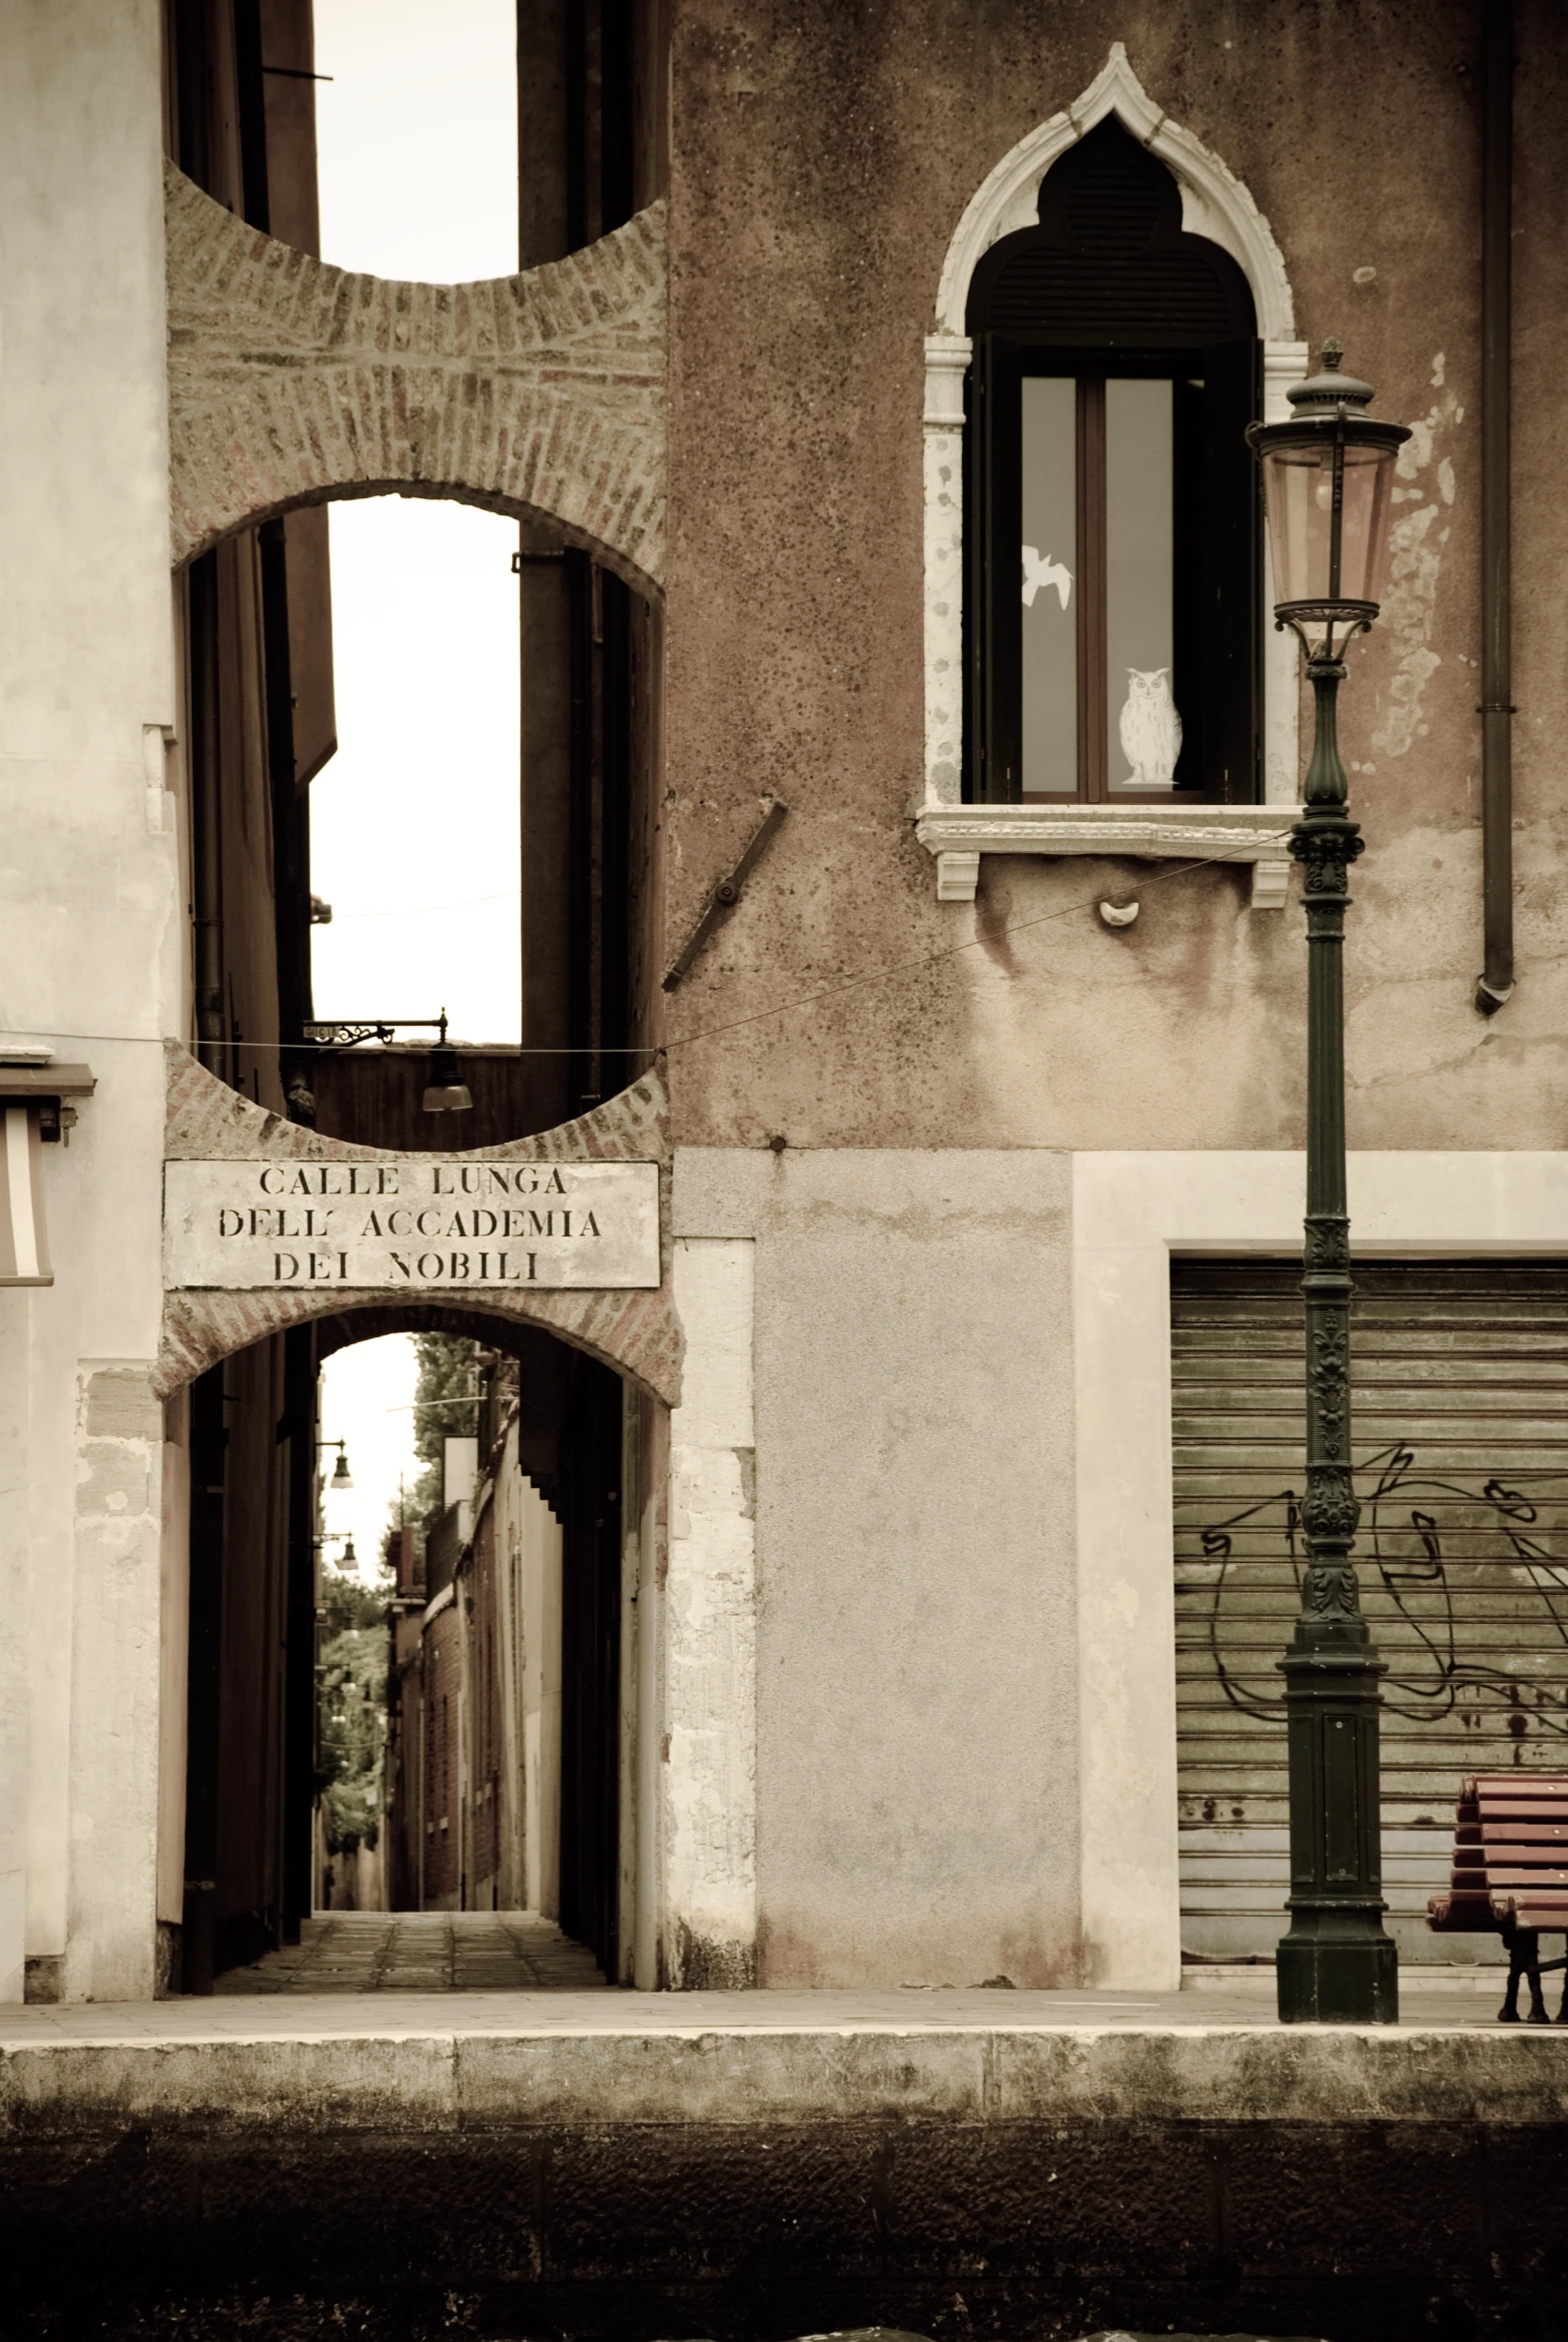 an archway that reads dala do santa felisi